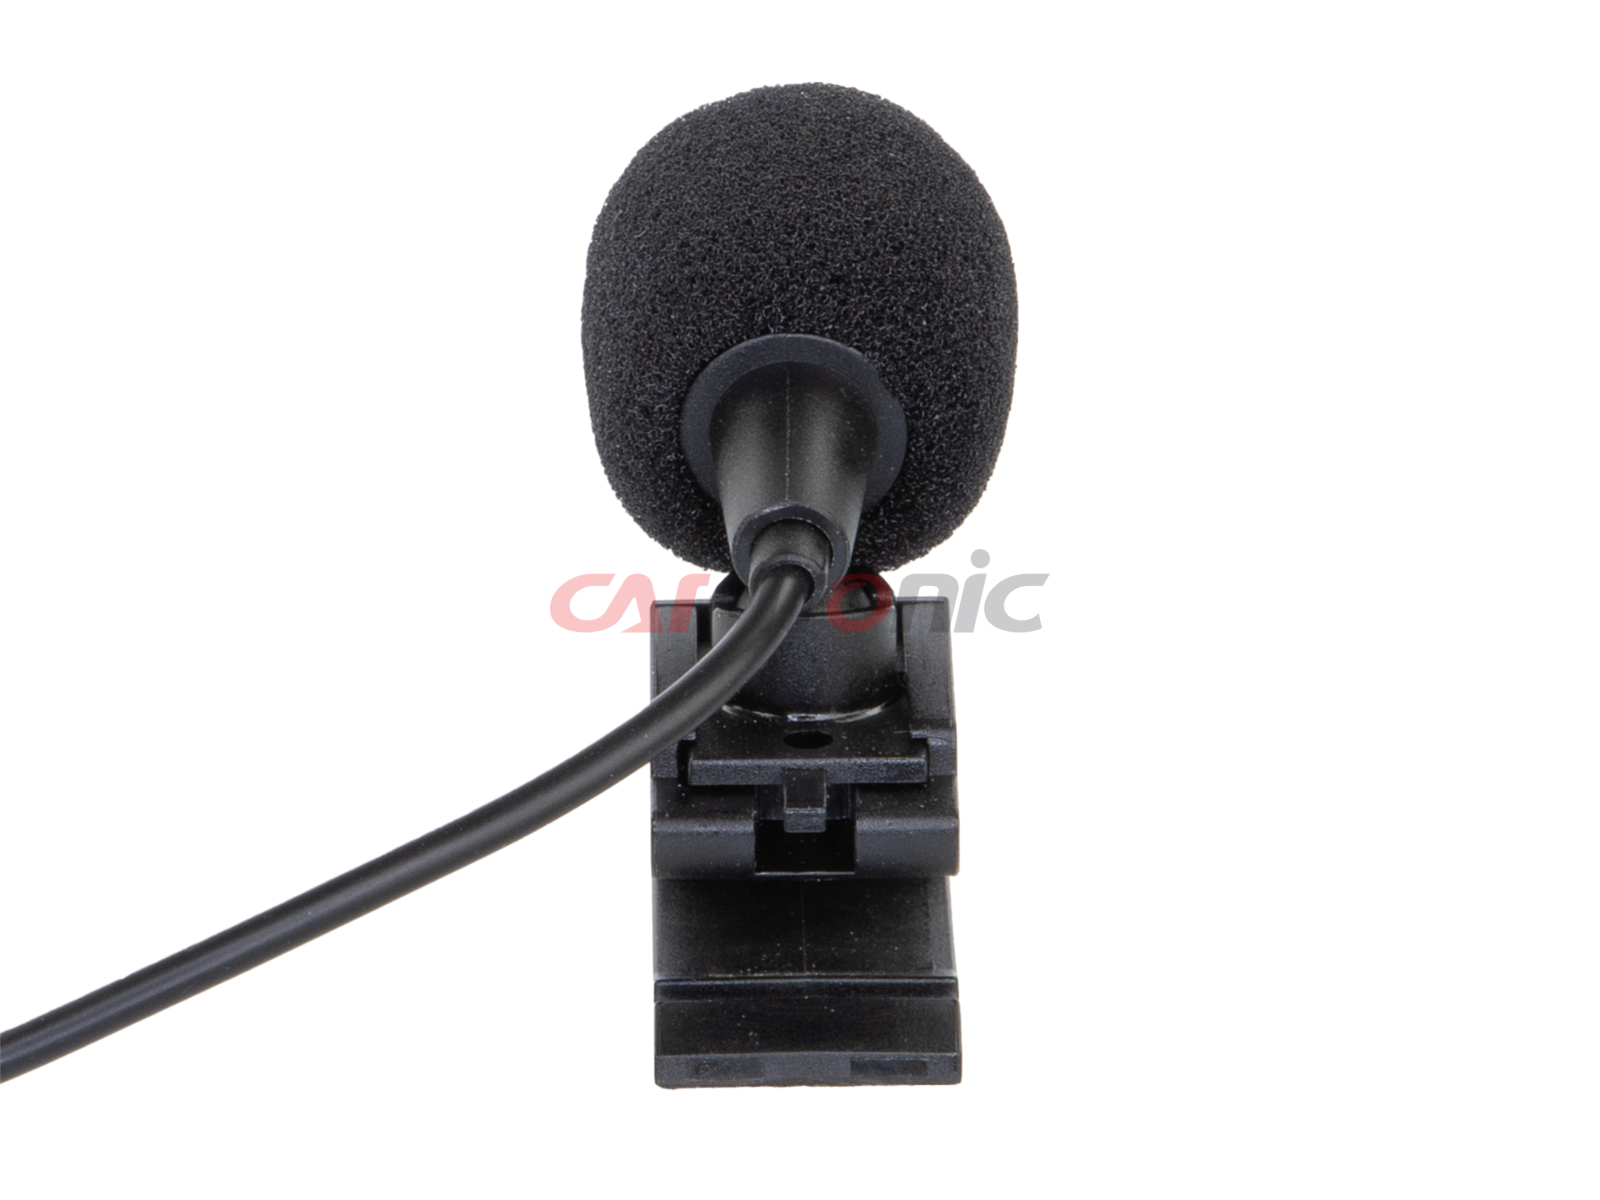 Uniwersalny mikrofon złącze Jack (m) 3,5mm.